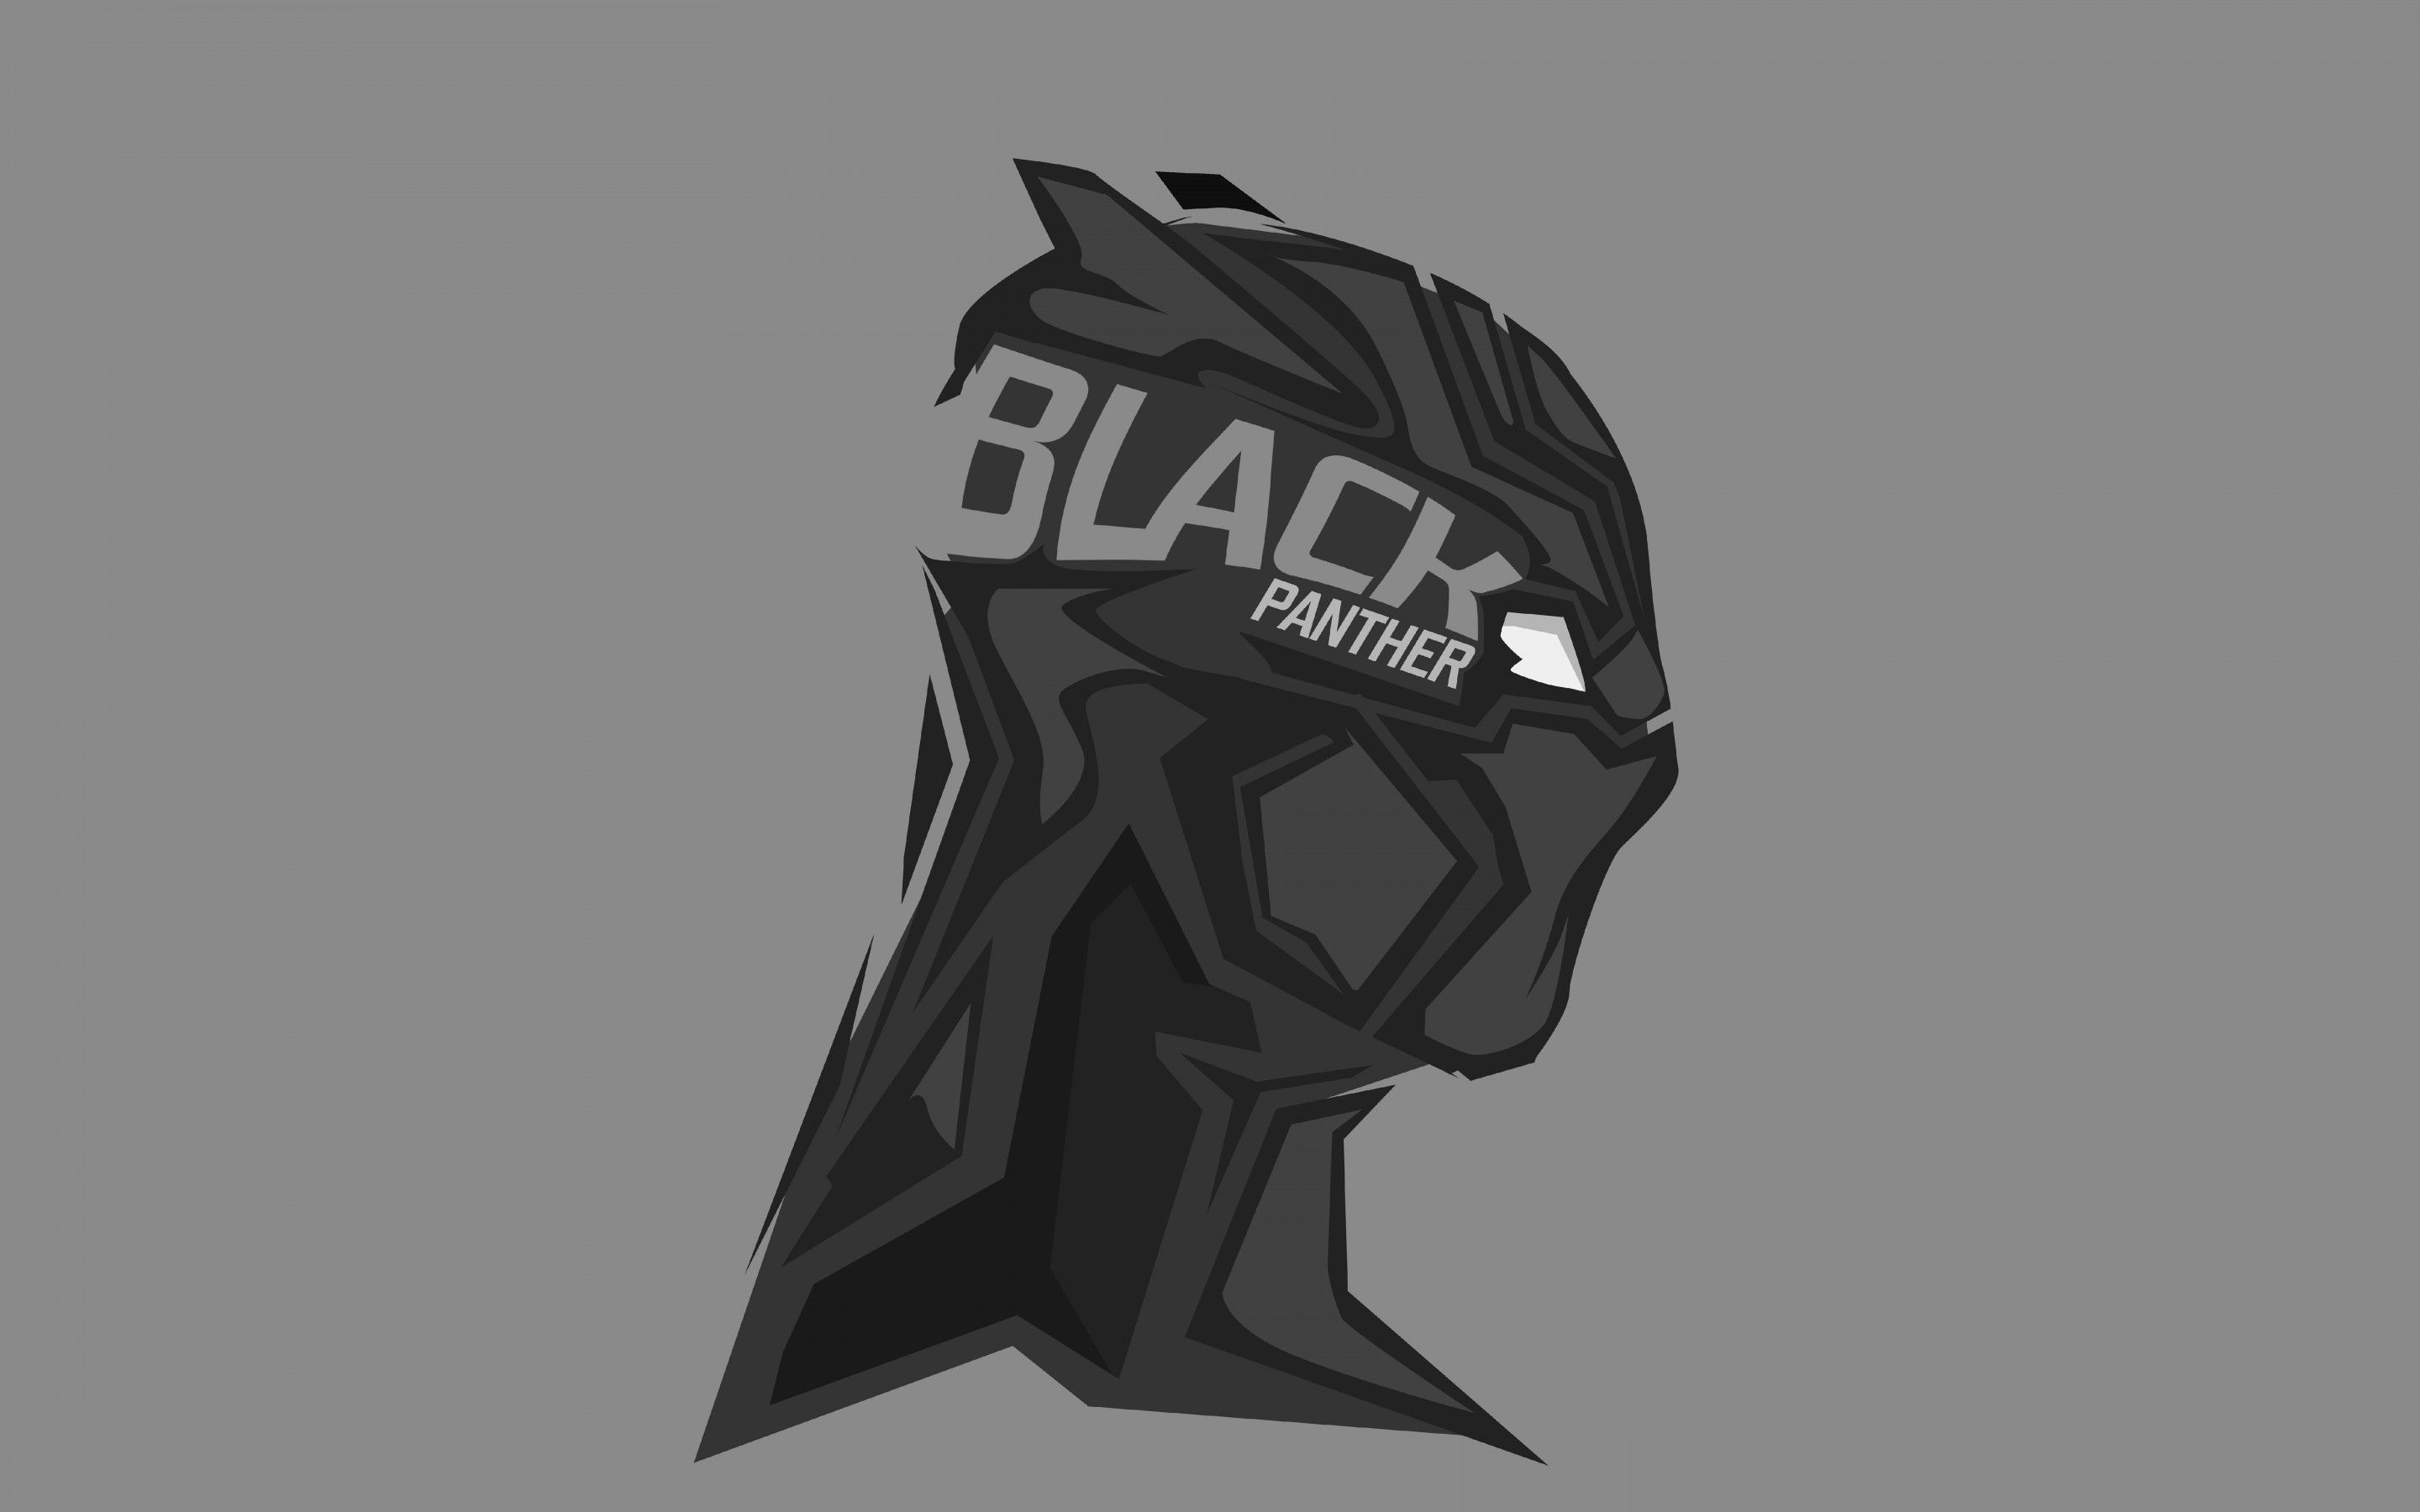 Black Panther Minimal Mask Wallpapers